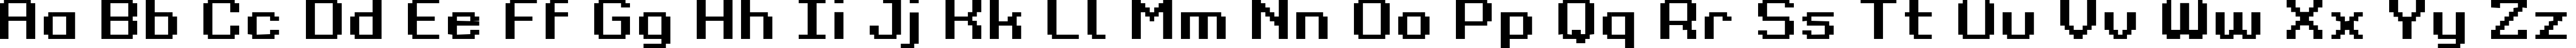 Пример написания английского алфавита шрифтом Grixel Kyrou 9 Regular Bold Xtnd